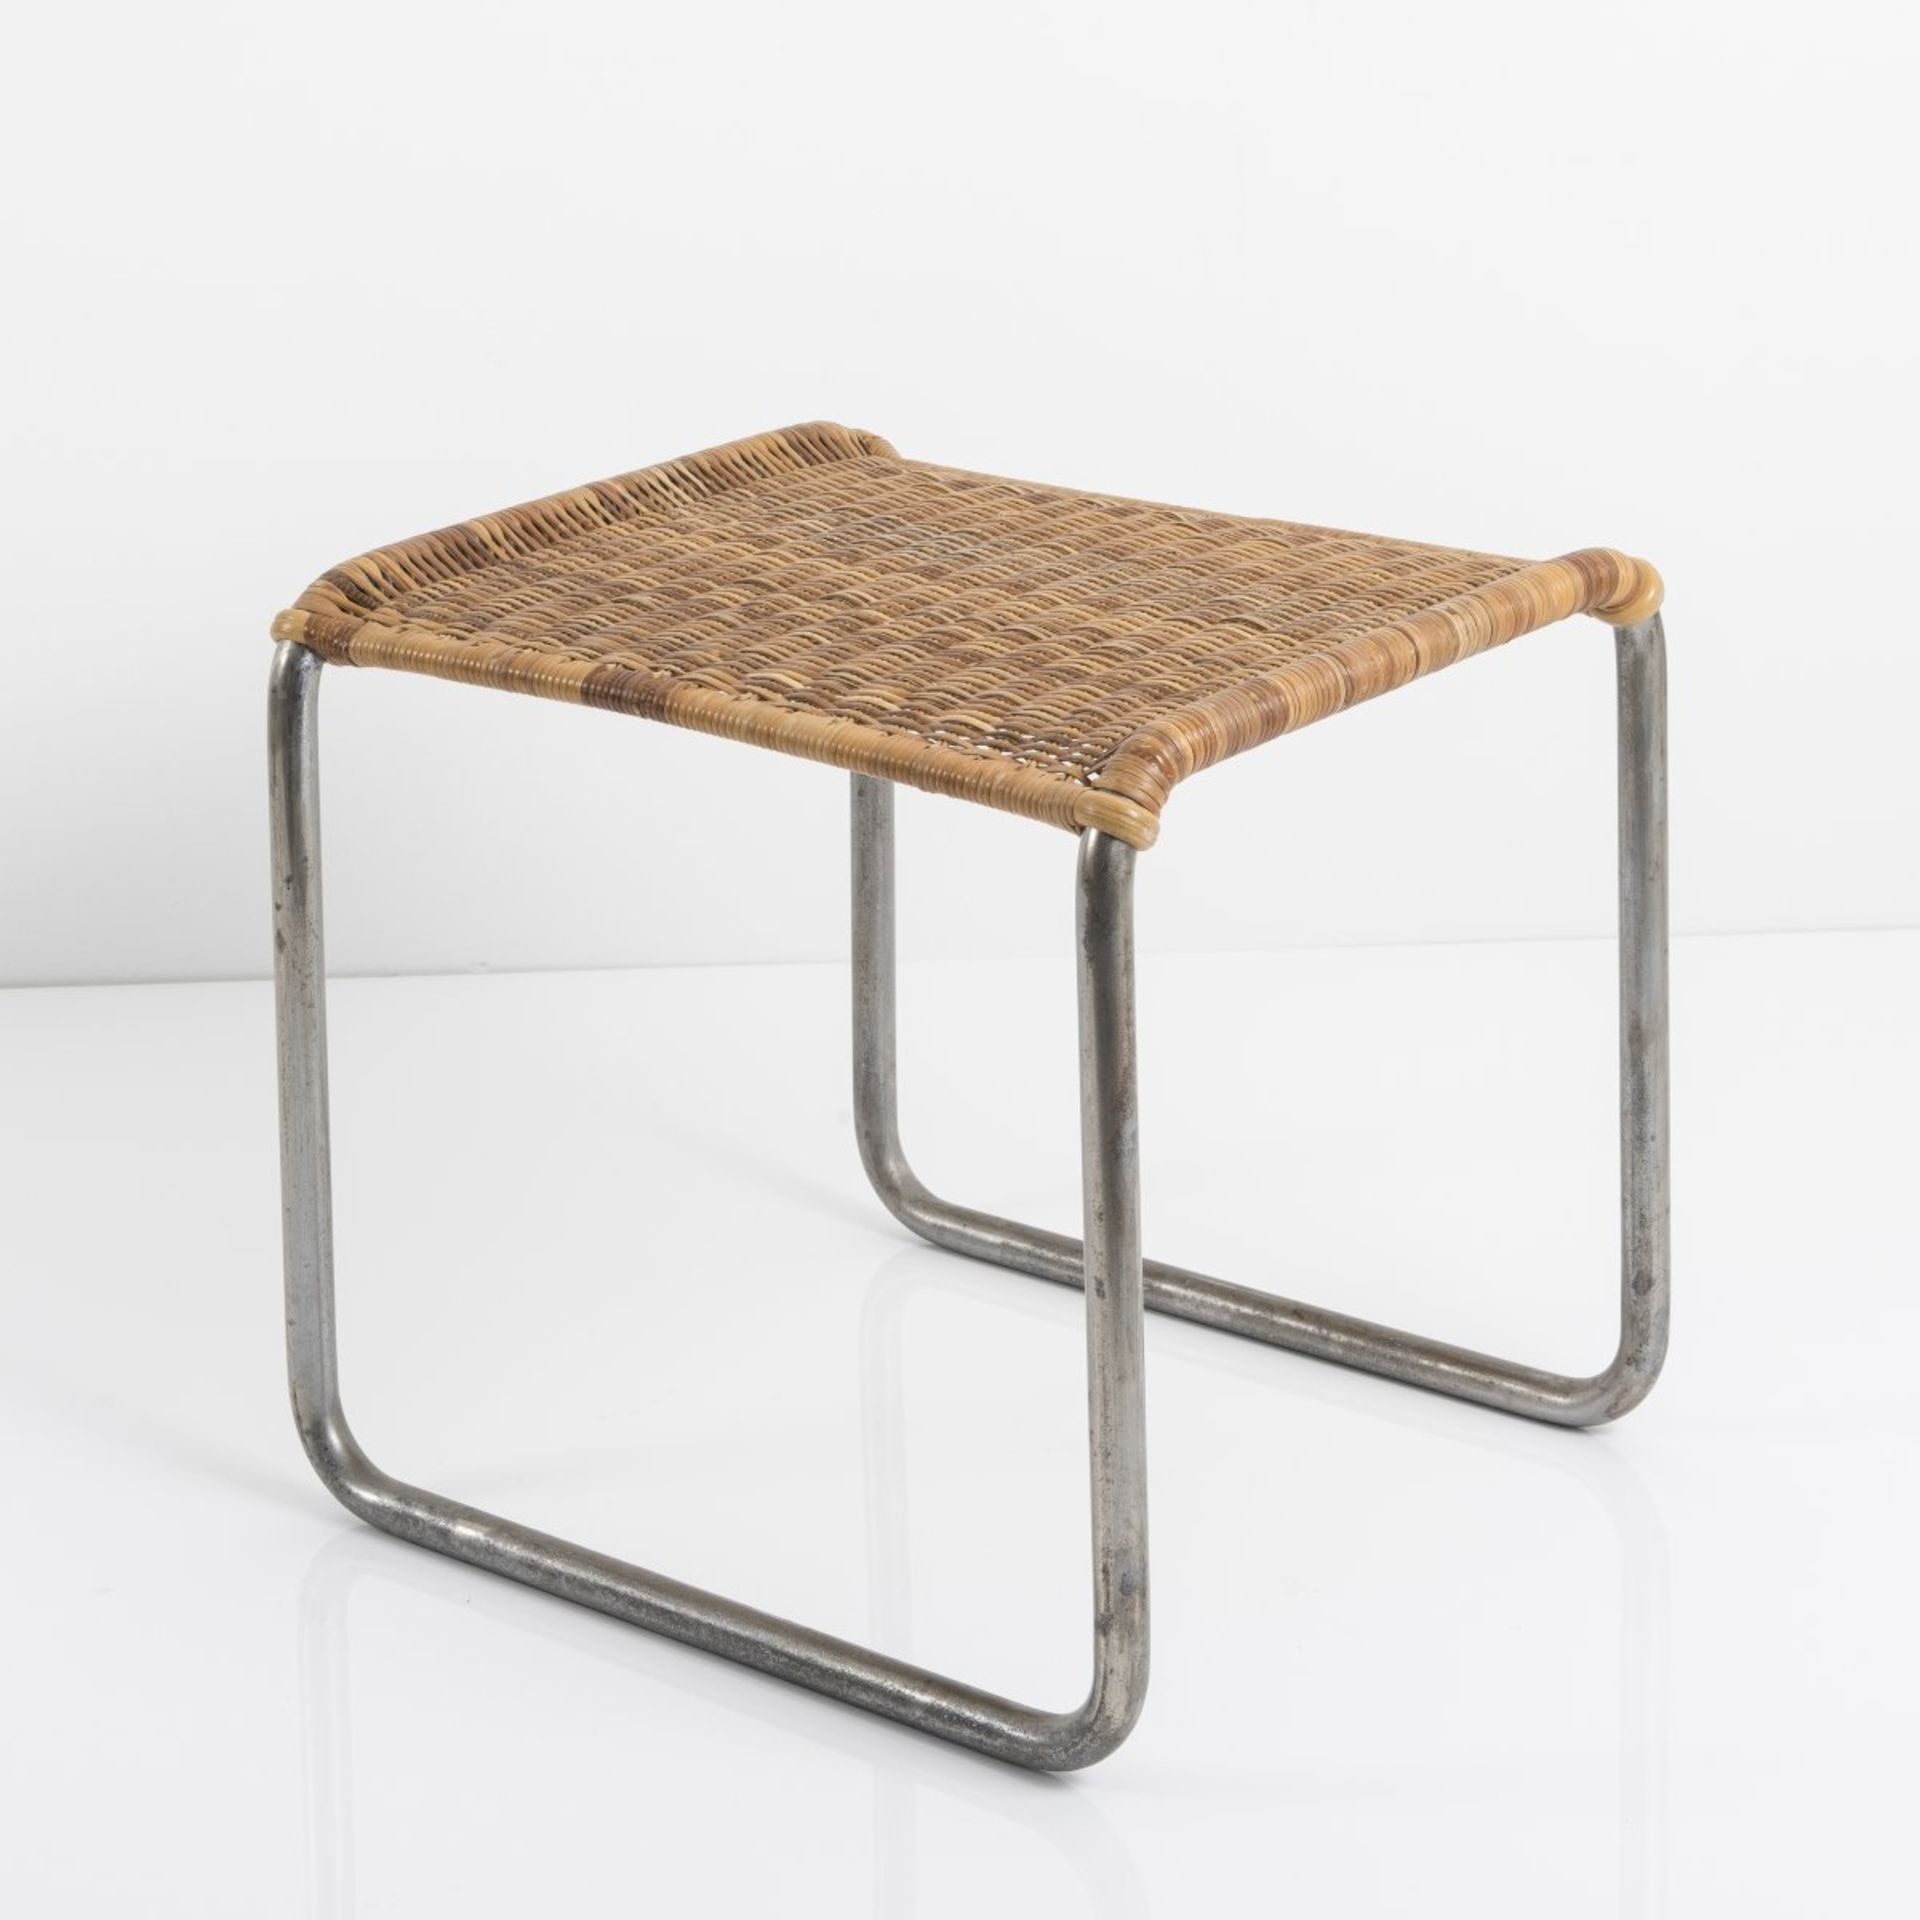 Ludwig Mies van der Rohe, 'MR 1' stool, 1927